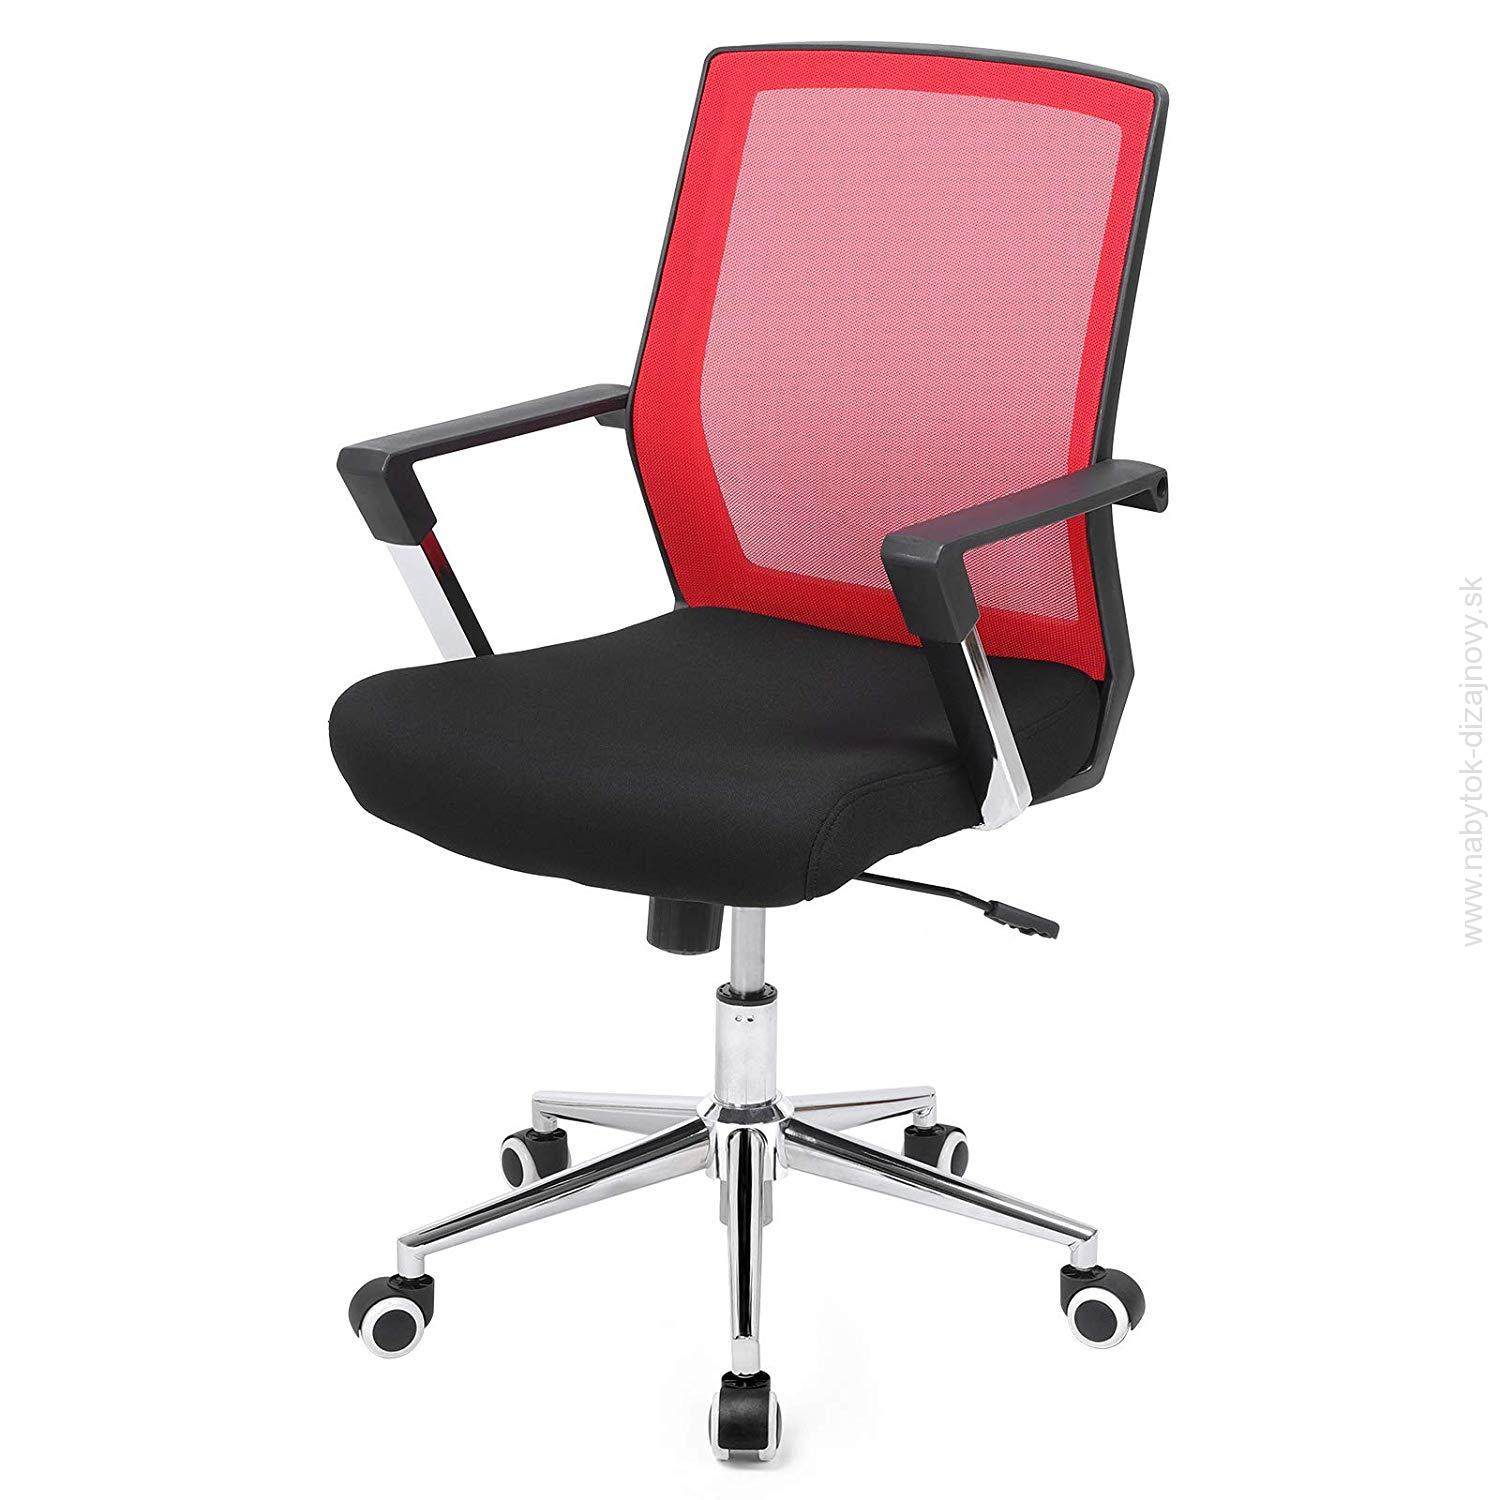 Kancelárska stolička Karcoolka, ergonomická nastaviteľná